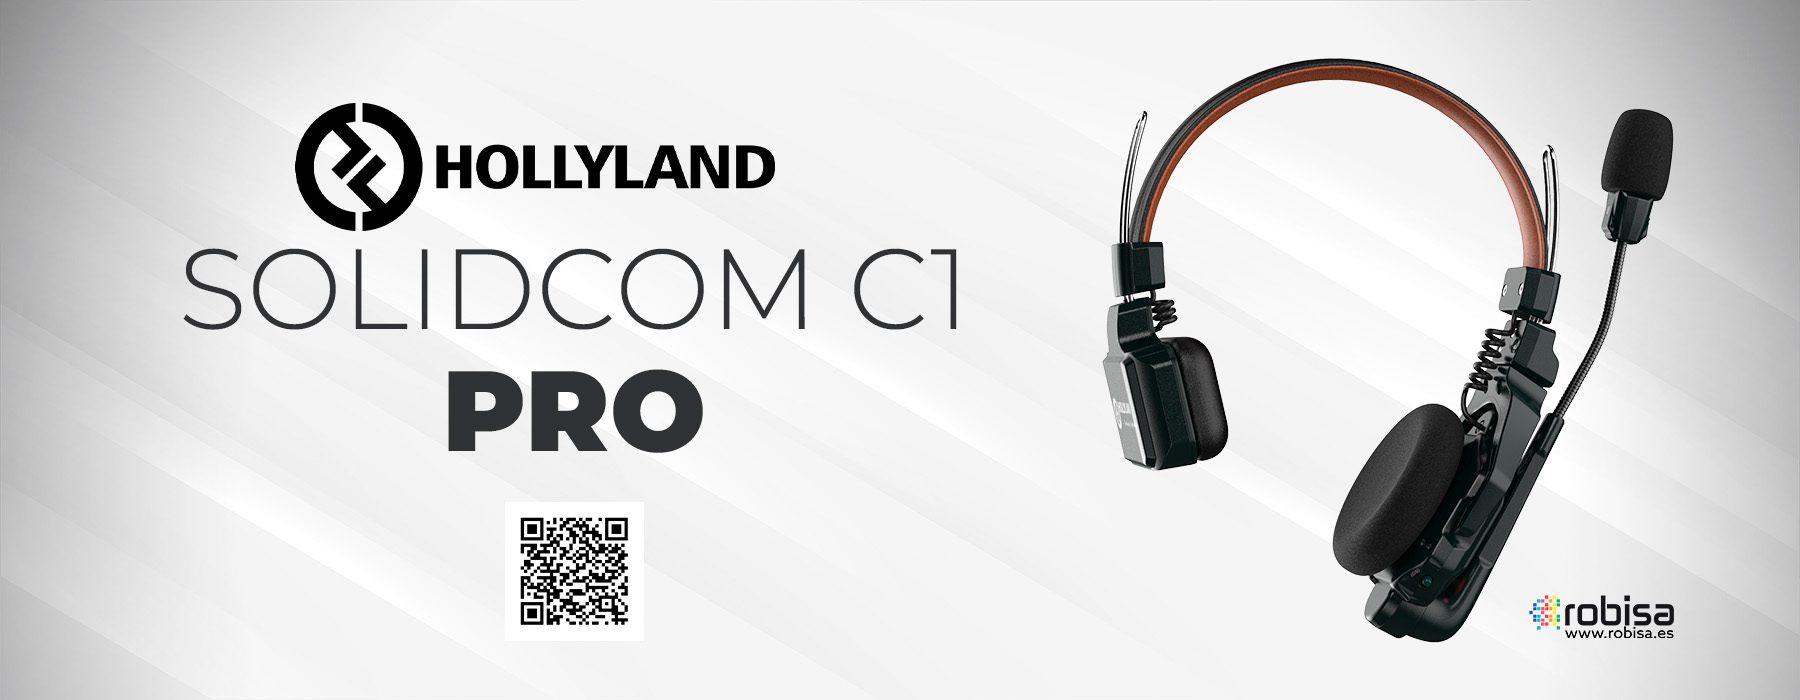 Nuevo Solidcom C1 Pro INTERCOM inalámbrico de Hollyland, el primer sistema ENC con micro dual del mundo 